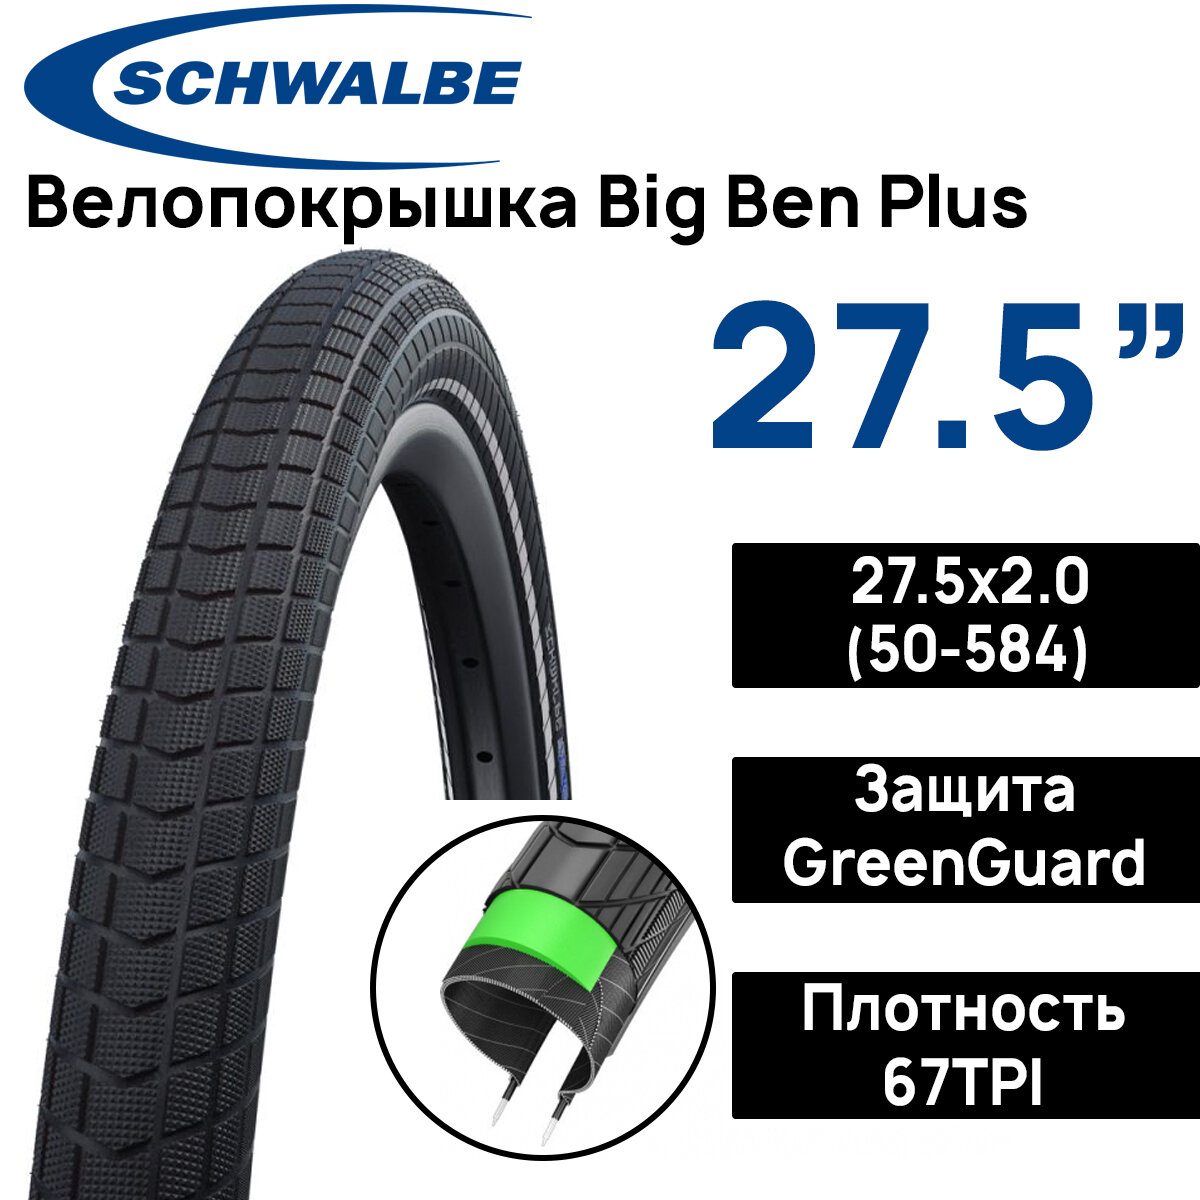 Покрышка для велосипеда Schwalbe Big Ben Plus 27.5x2.00 (50-584) защита от проколов G-Guard, черный